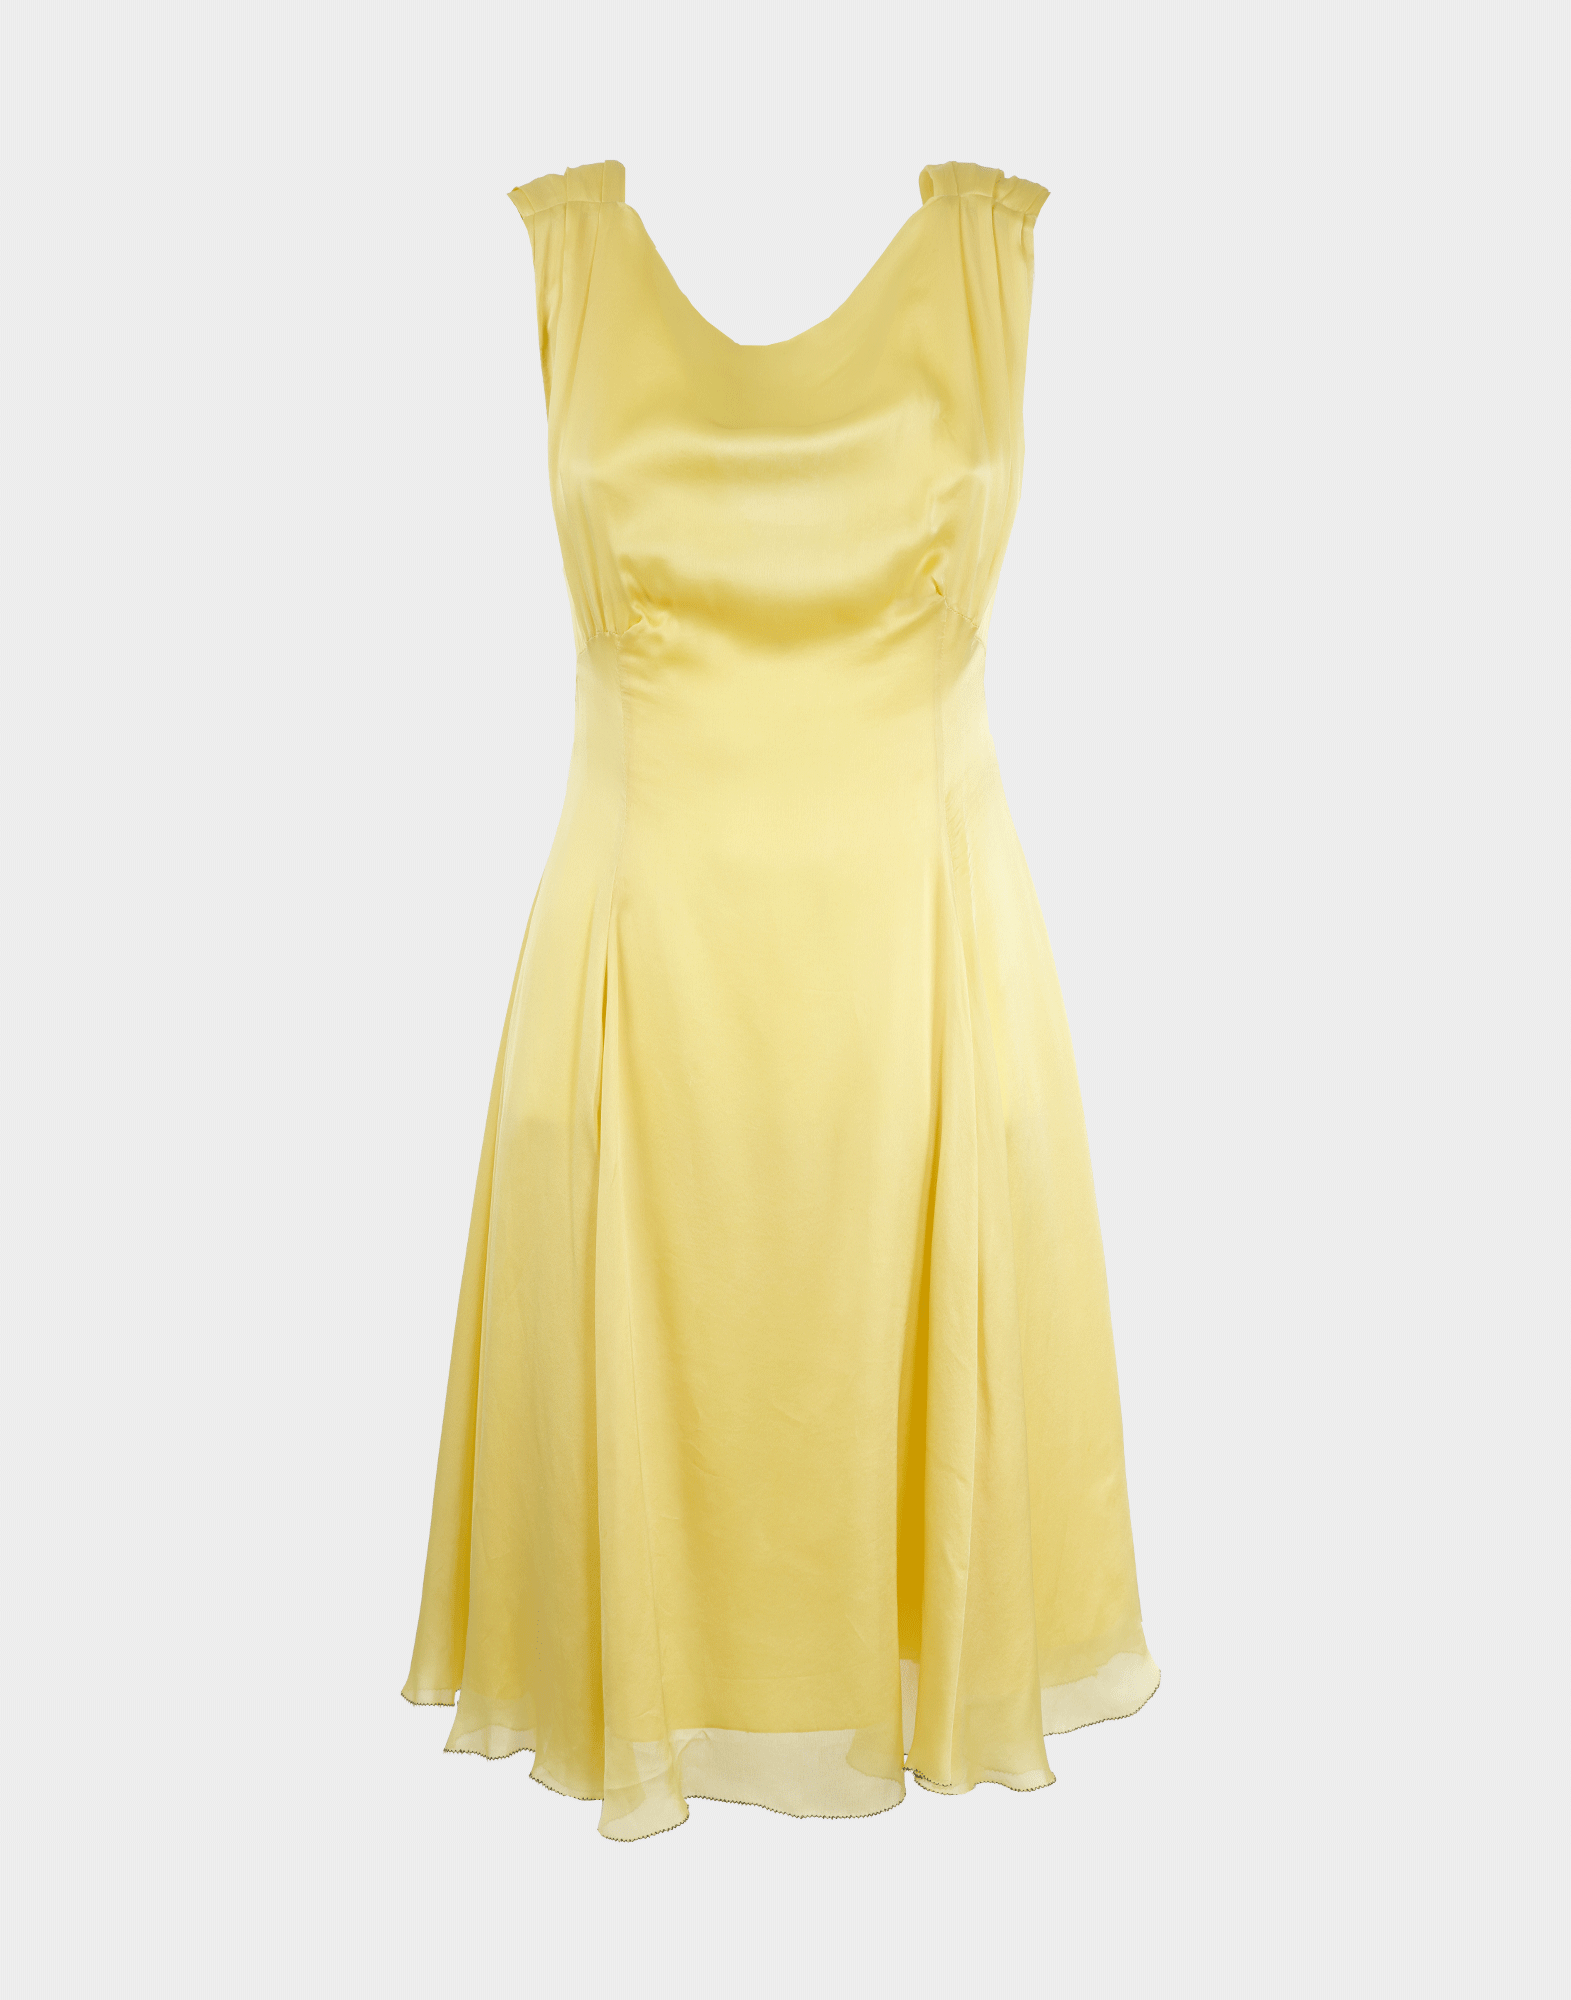 abito giallo da donna firmato moschino in leggera seta con punto vita evidenziato